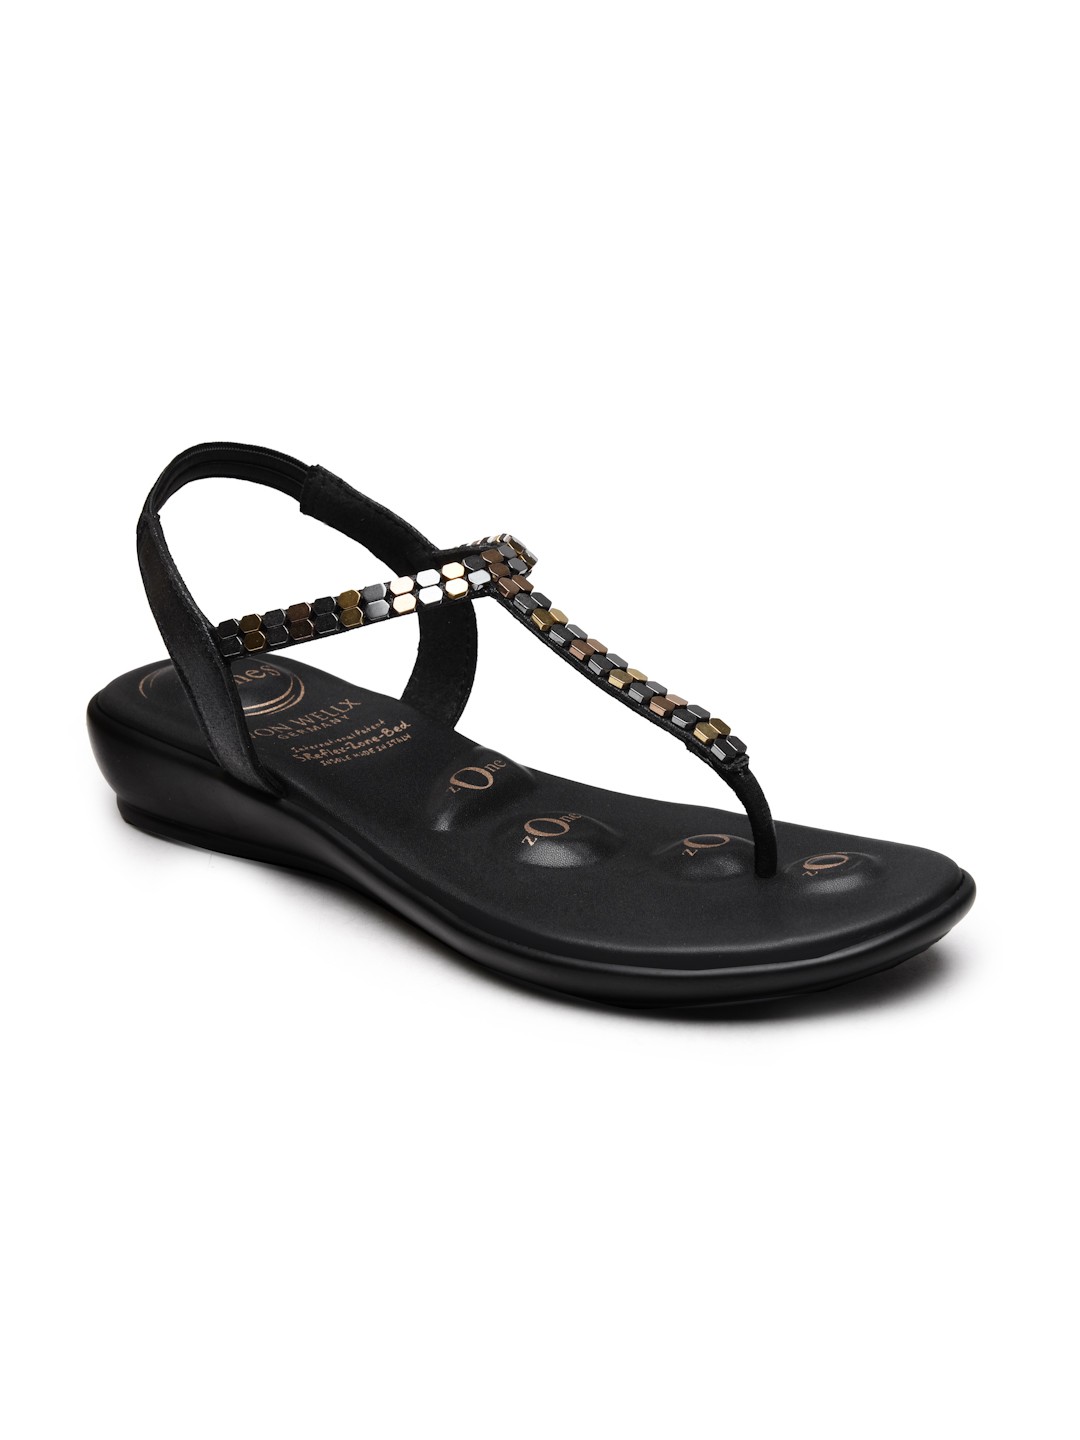 Buy Von Wellx Germany Comfort Women's Black Casual Sandals Regina Online in Visakhapatnam